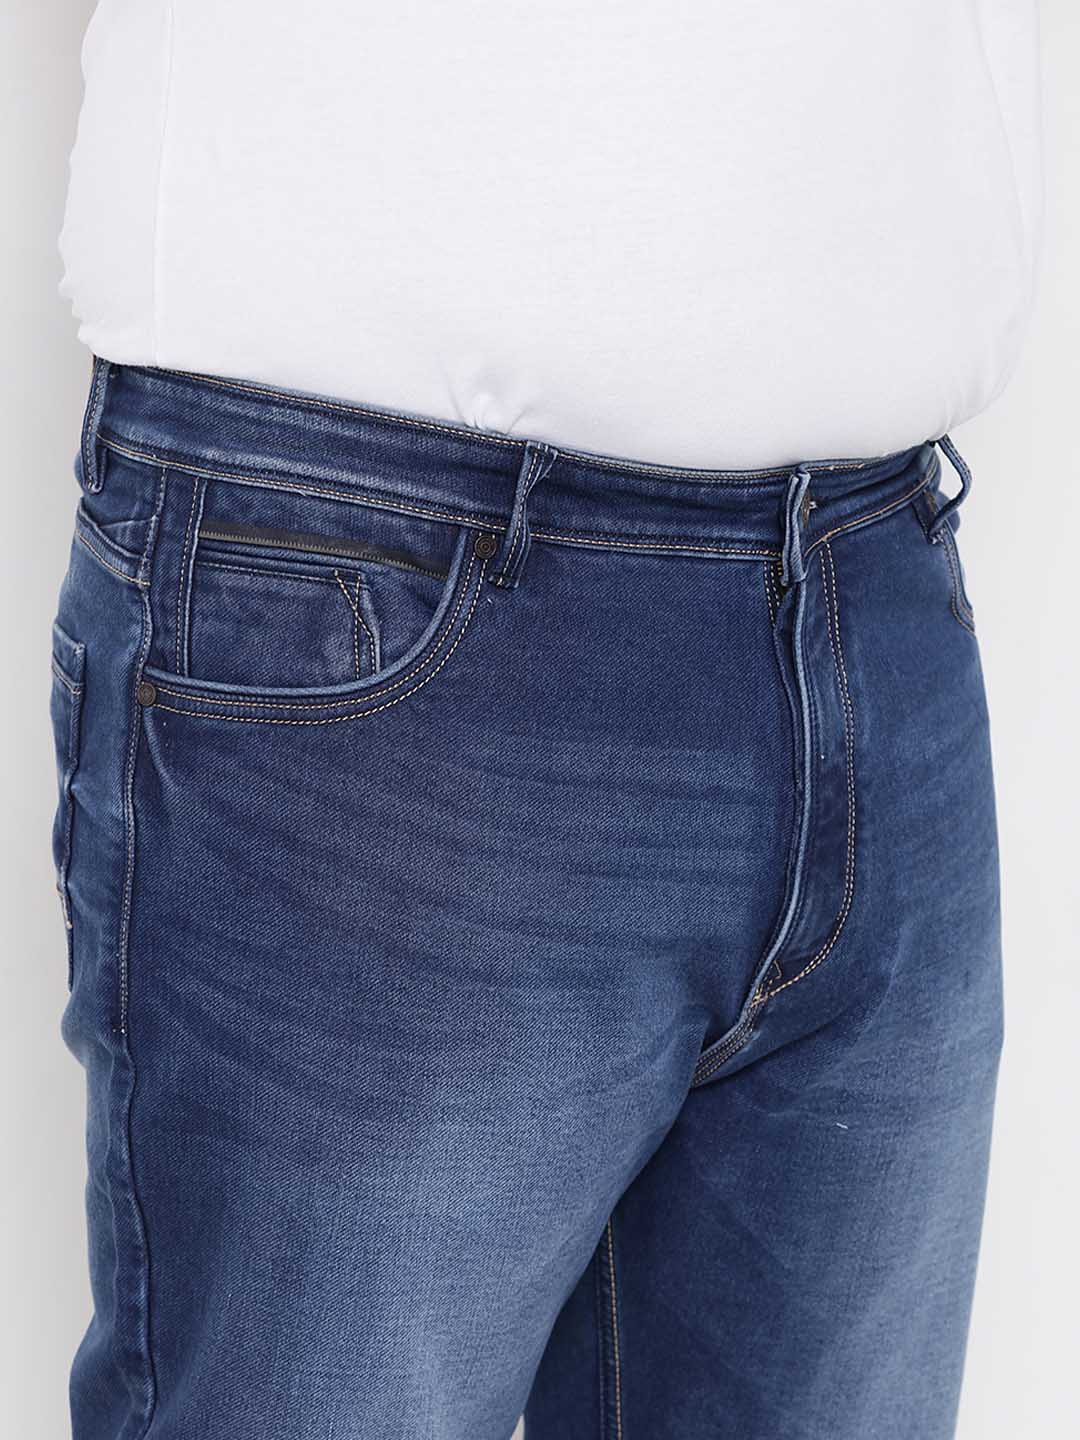 bottomwear/jeans/BEPLJPJ1188/bepljpj1188-2.jpg